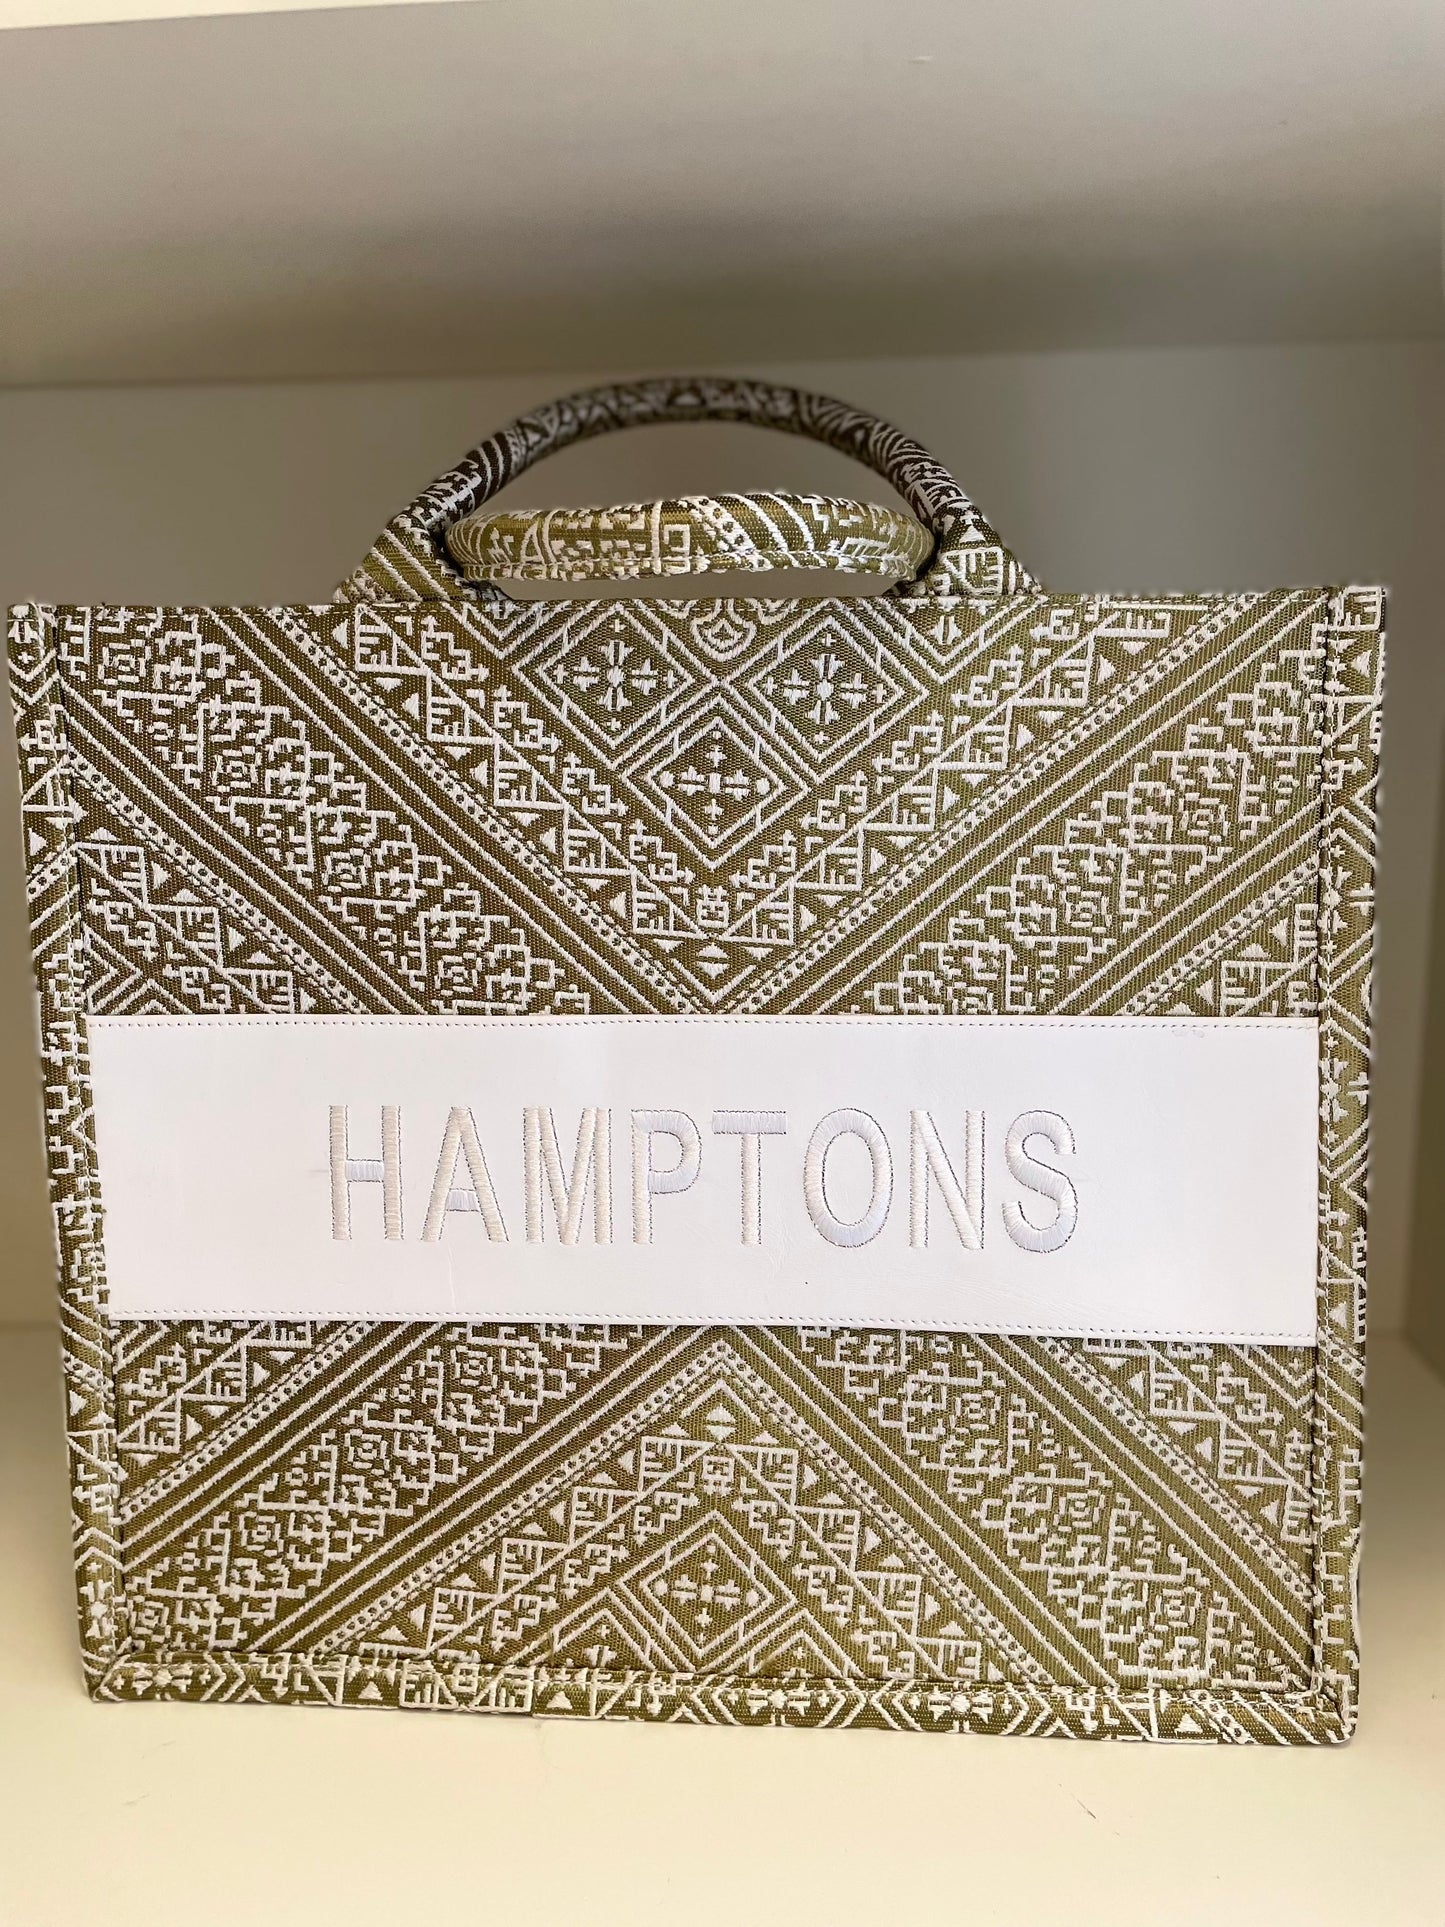 Large Tote CD Hamptons - Premium Bag from Marina St. Barth - Just $395.00! Shop now at Marina St Barth